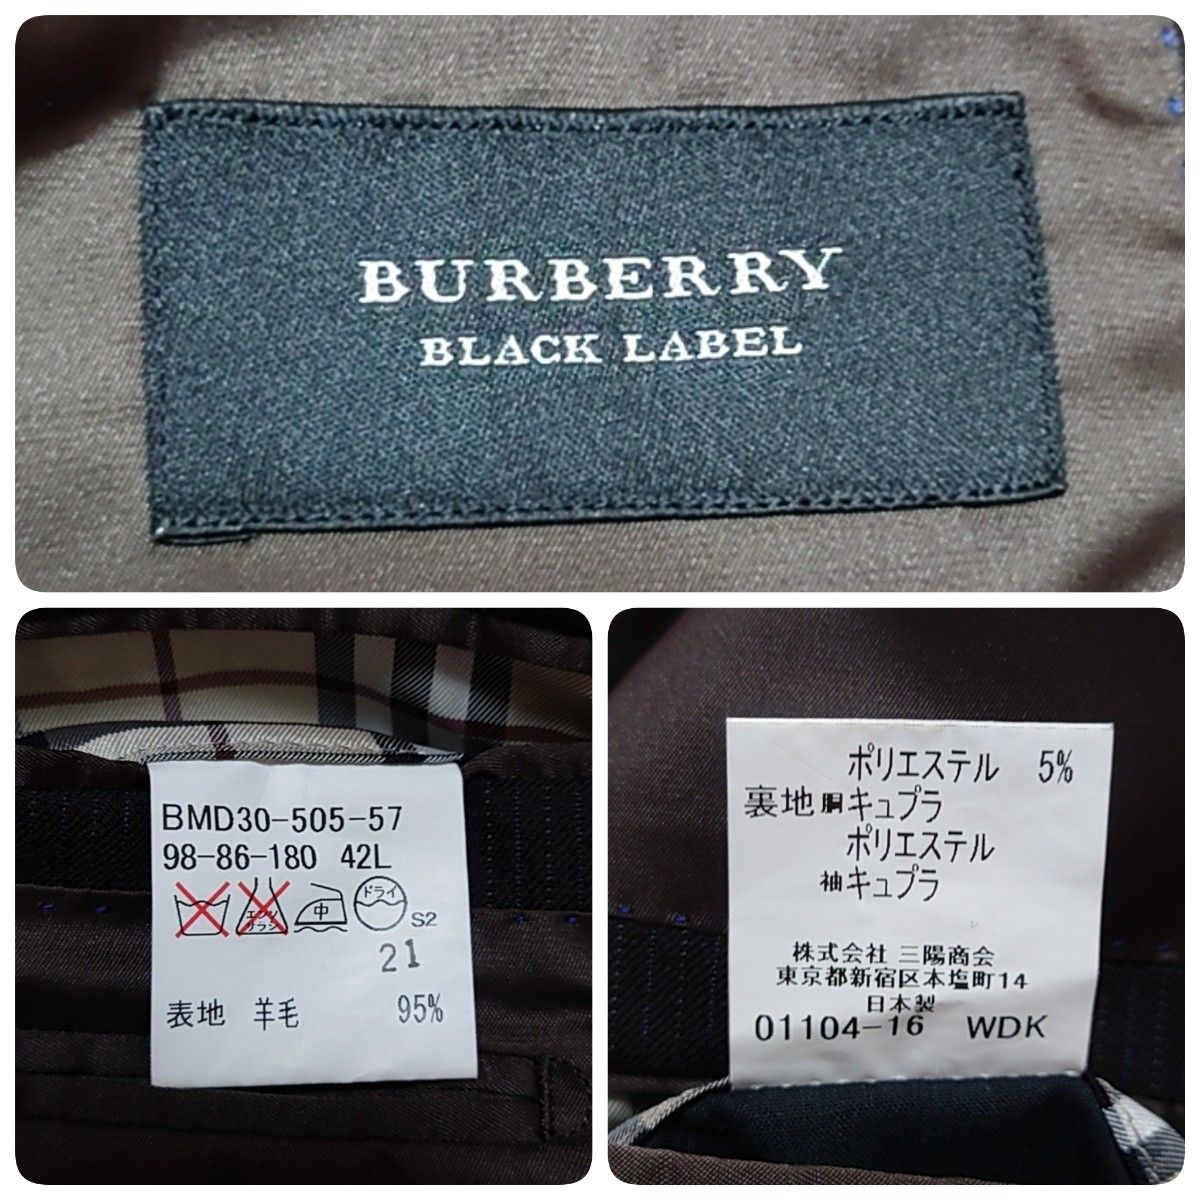 BURBERRY BLACK LABEL バーバリーブラックレーベル テーラードジャケット ノバチェック 3B サイズXL 